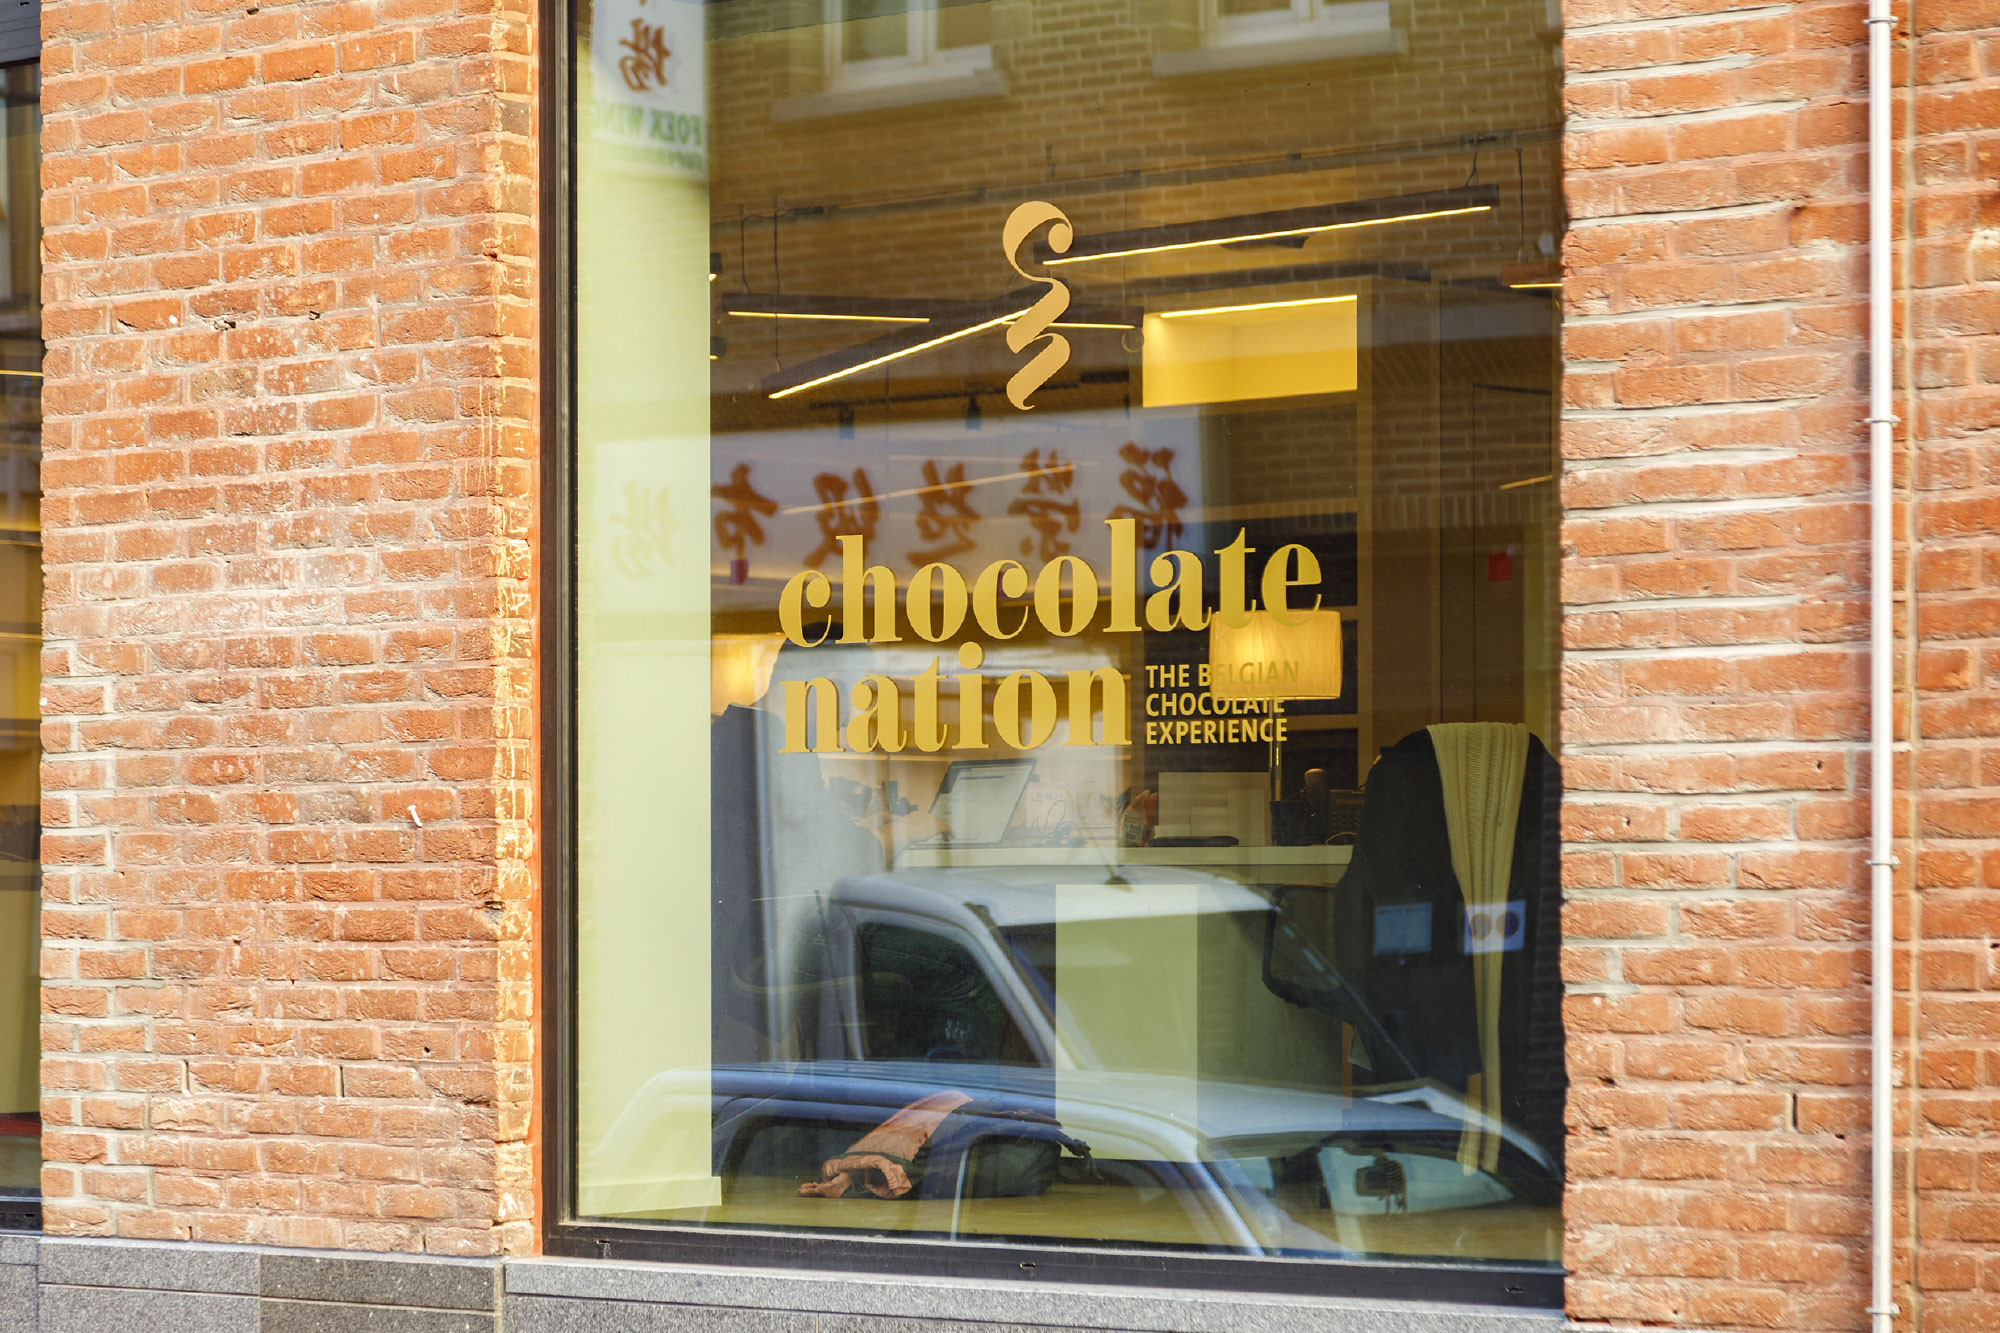 Chocolate Nation Antwerpen